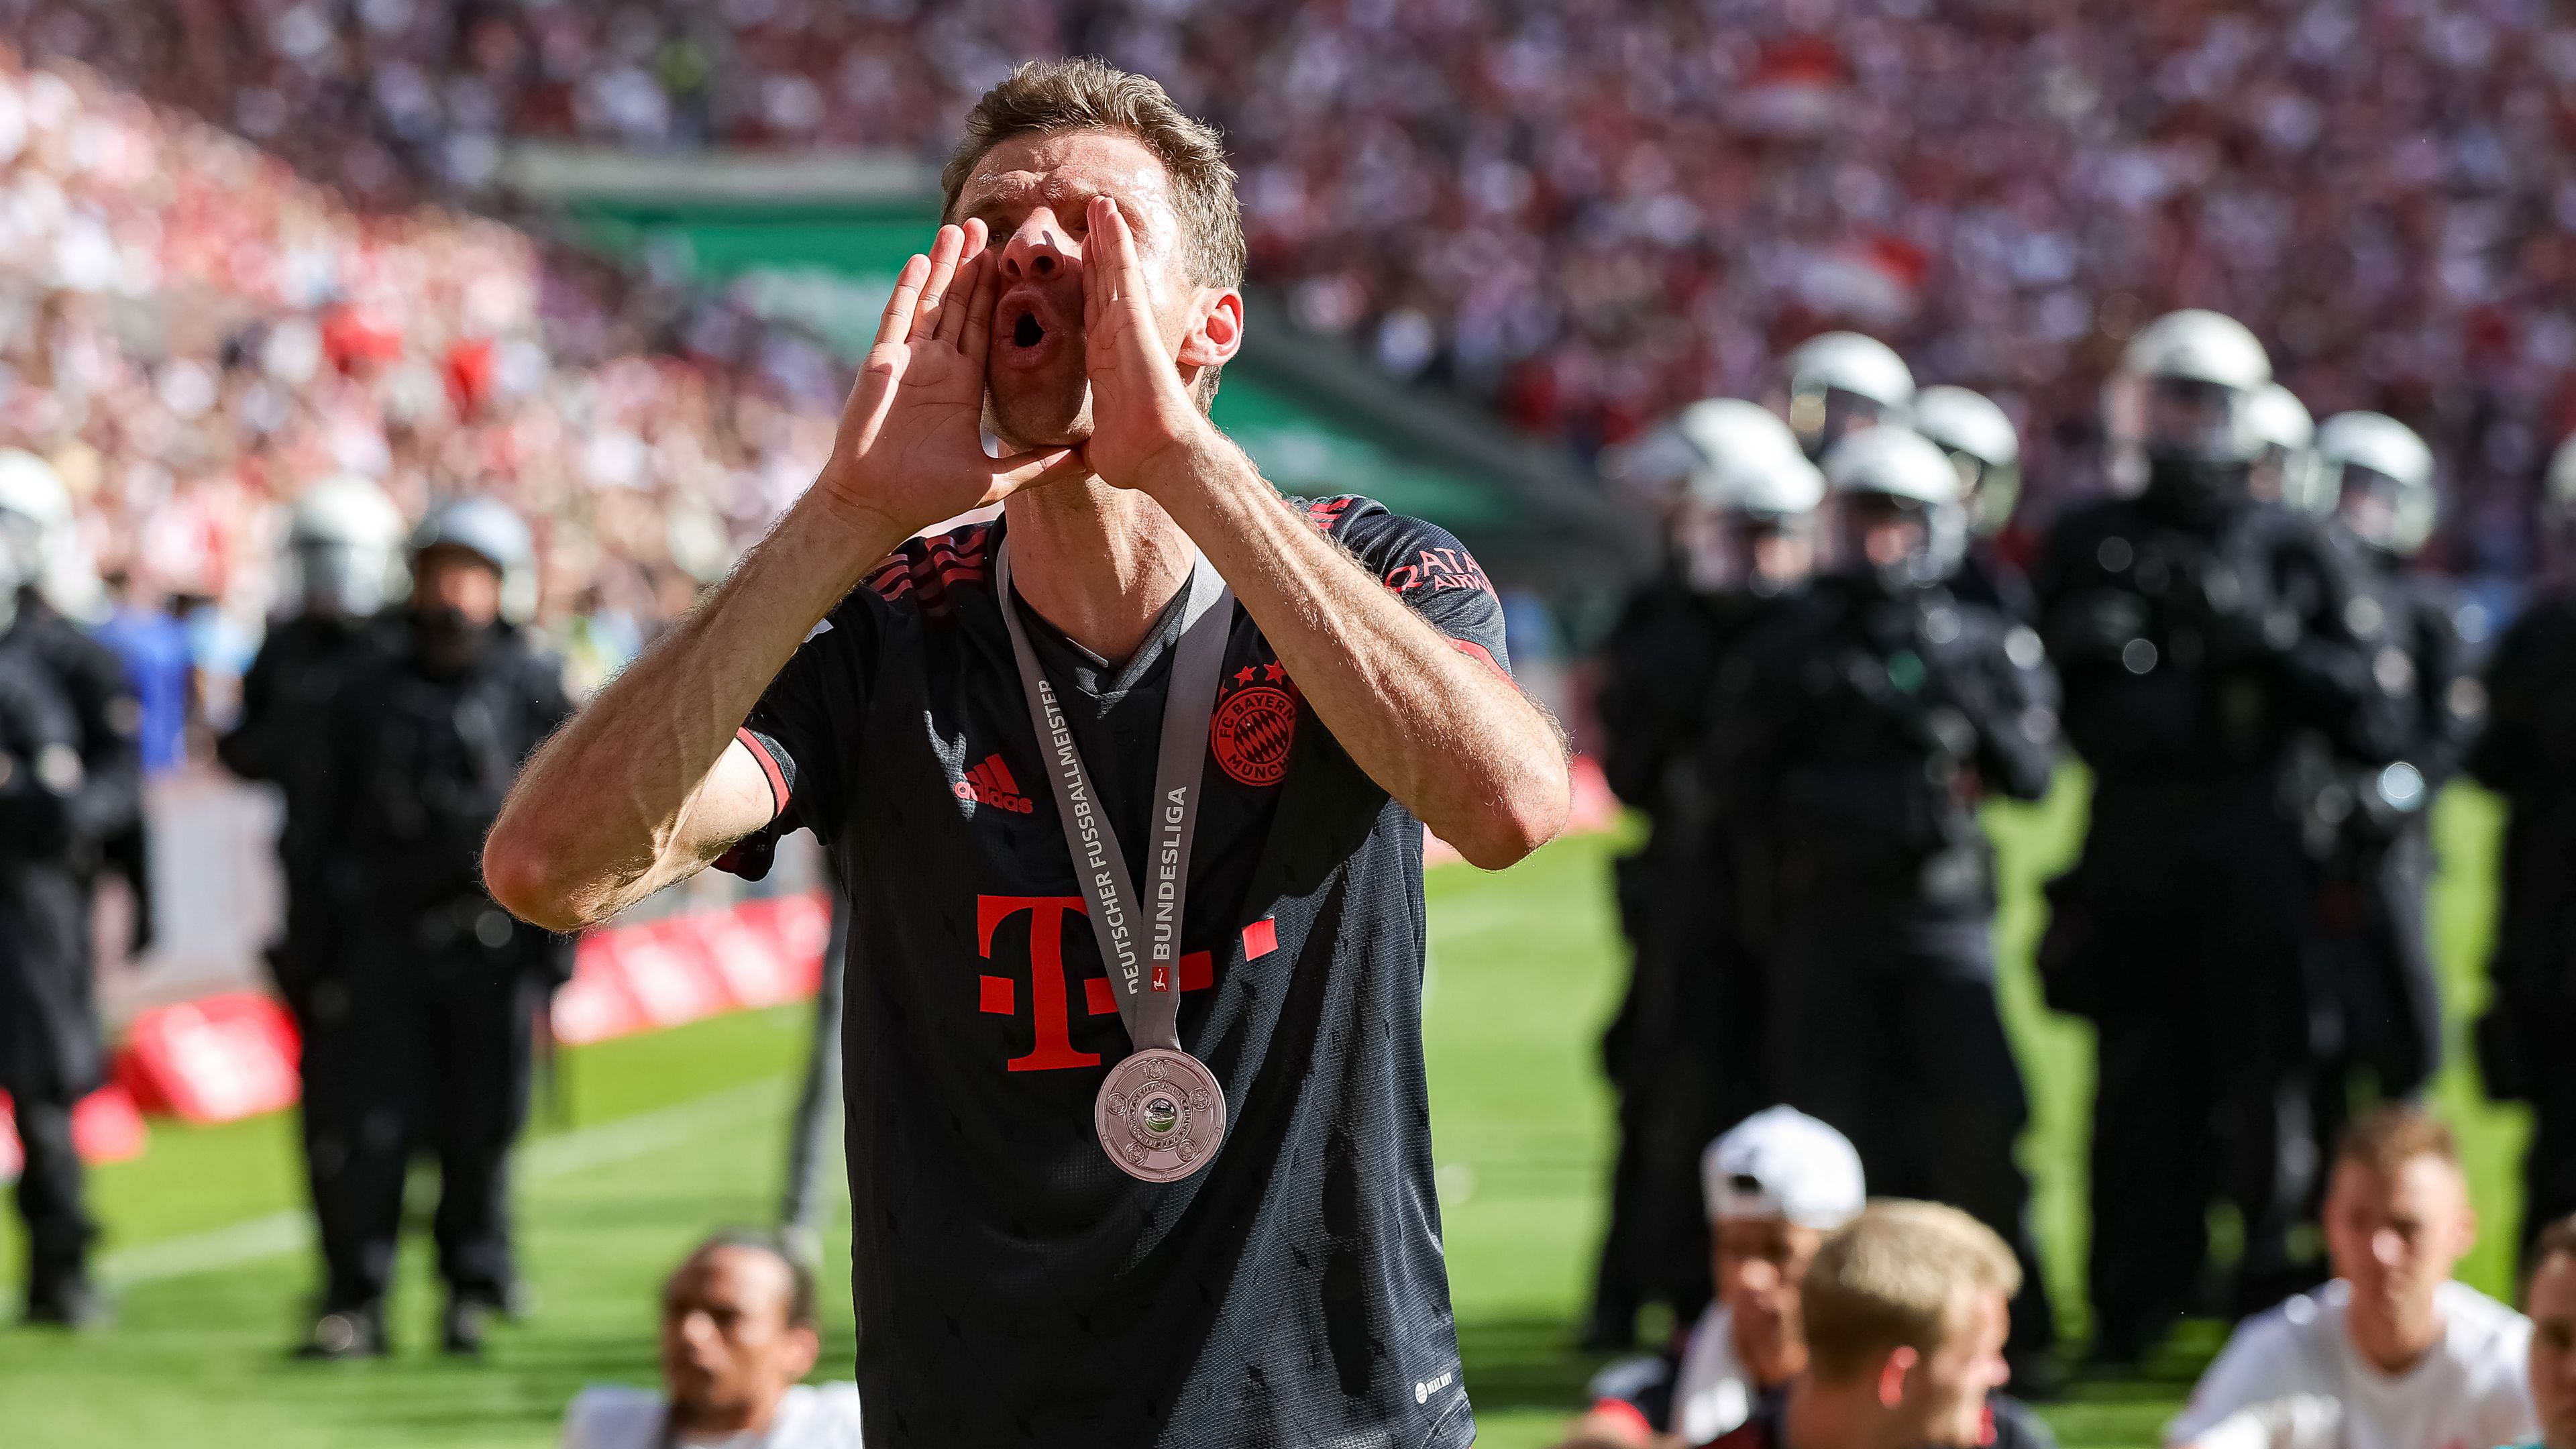 Thomas Müller a Bundesliga ikonikus alakja